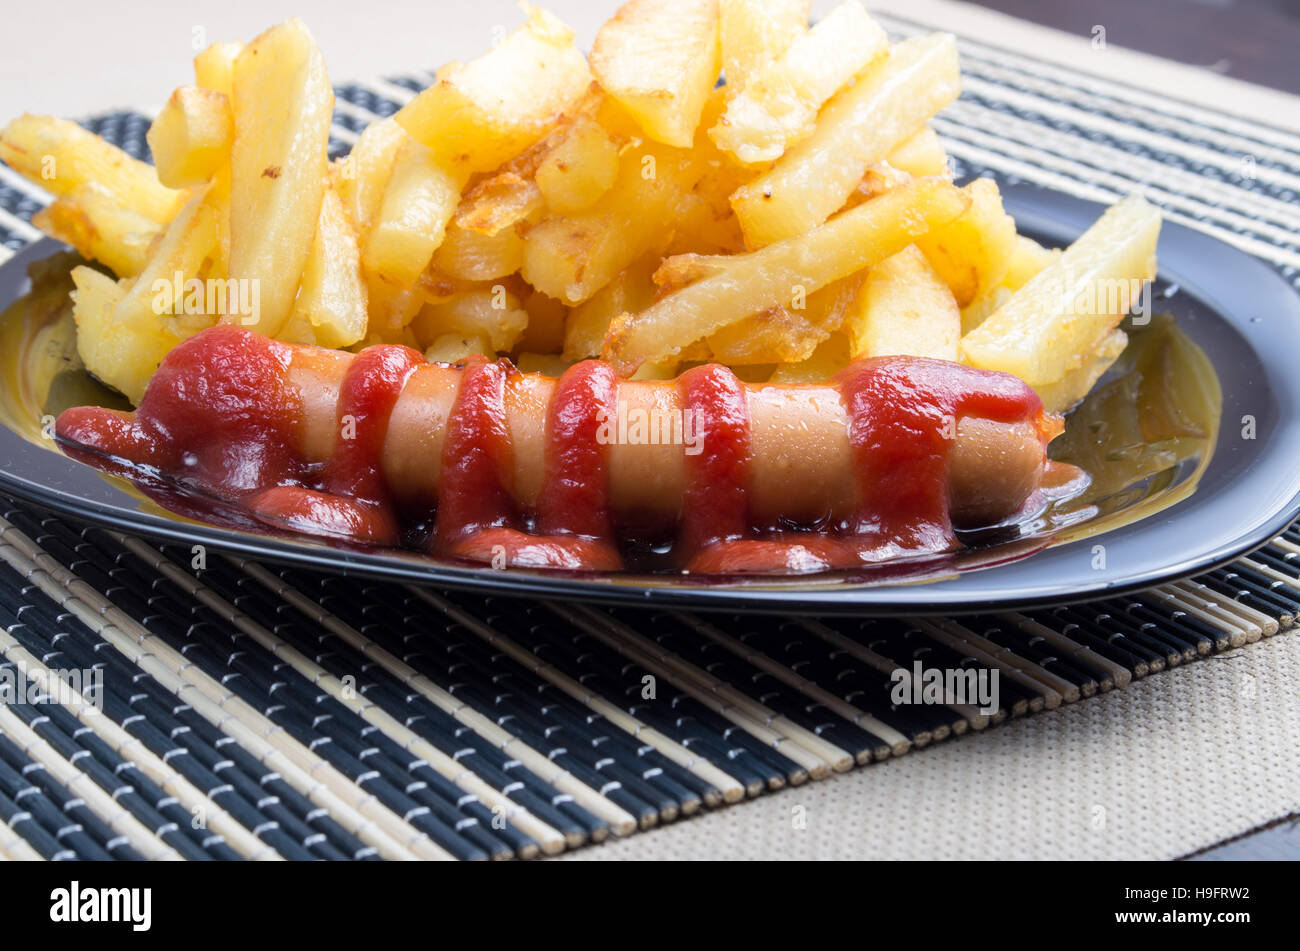 Typisches russisches Gericht Closeup - Bratkartoffeln und Bratwurst mit Tomaten-Ketchup auf einem dunklen Teller Stockfoto